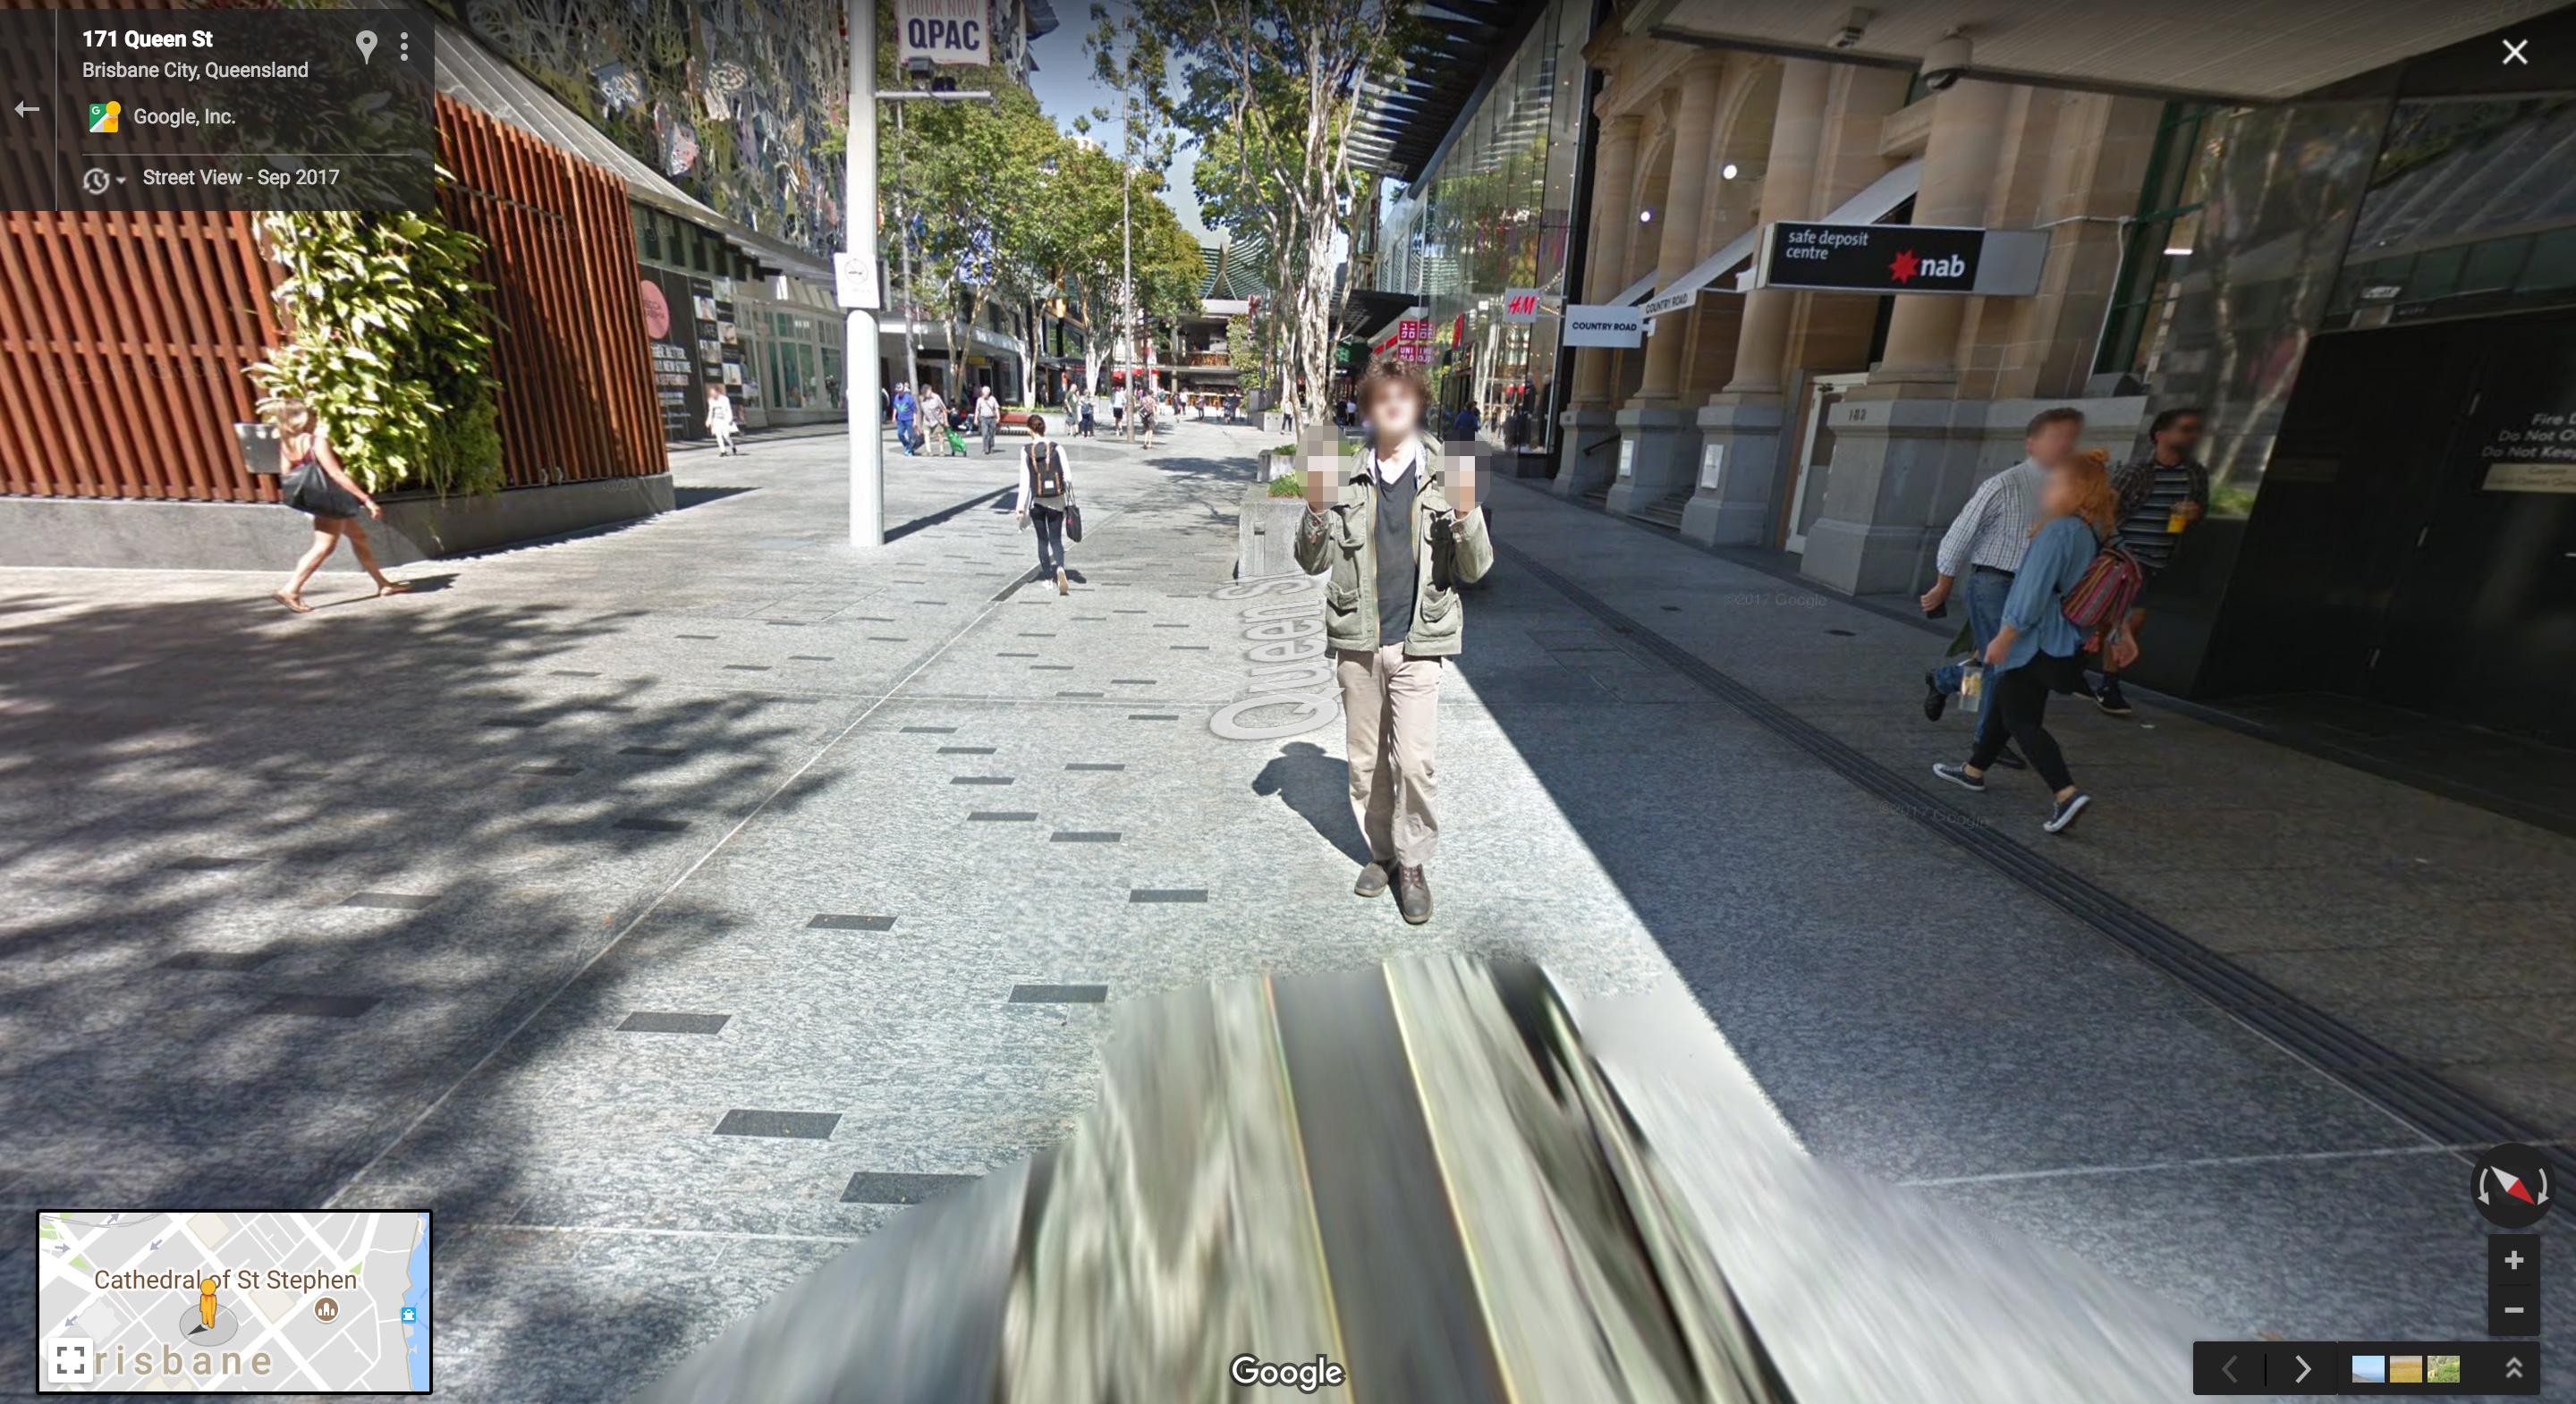 Человека сначала замечают на расстоянии (в коричневатой одежде, в правом верхнем углу изображения), но быстро обнаруживают присутствие камер Google - и вынашивает коварный план